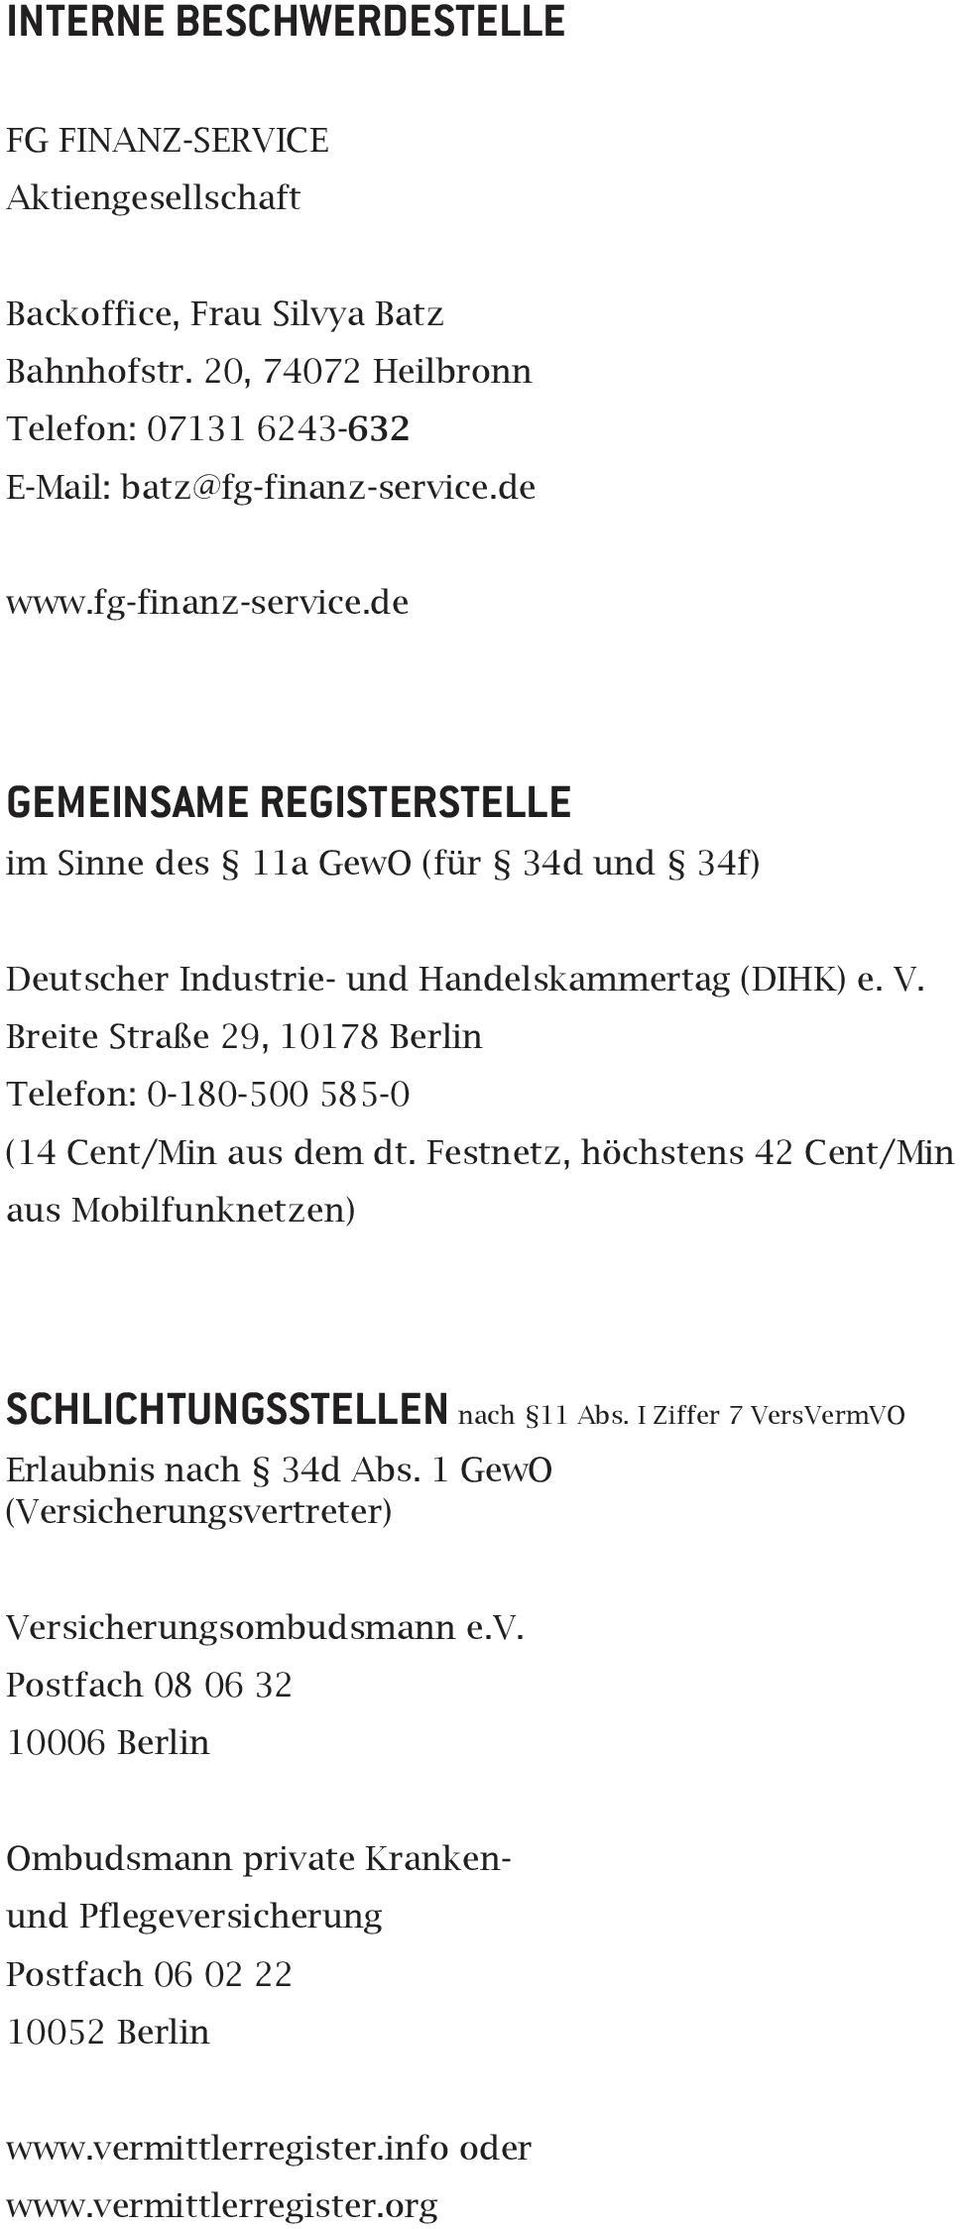 Breite Straße 29, 10178 Berlin Telefon: 0-180-500 585-0 (14 Cent/Min aus dem dt. Festnetz, höchstens 42 Cent/Min aus Mobilfunknetzen) Schlichtungsstellen nach 11 Abs.